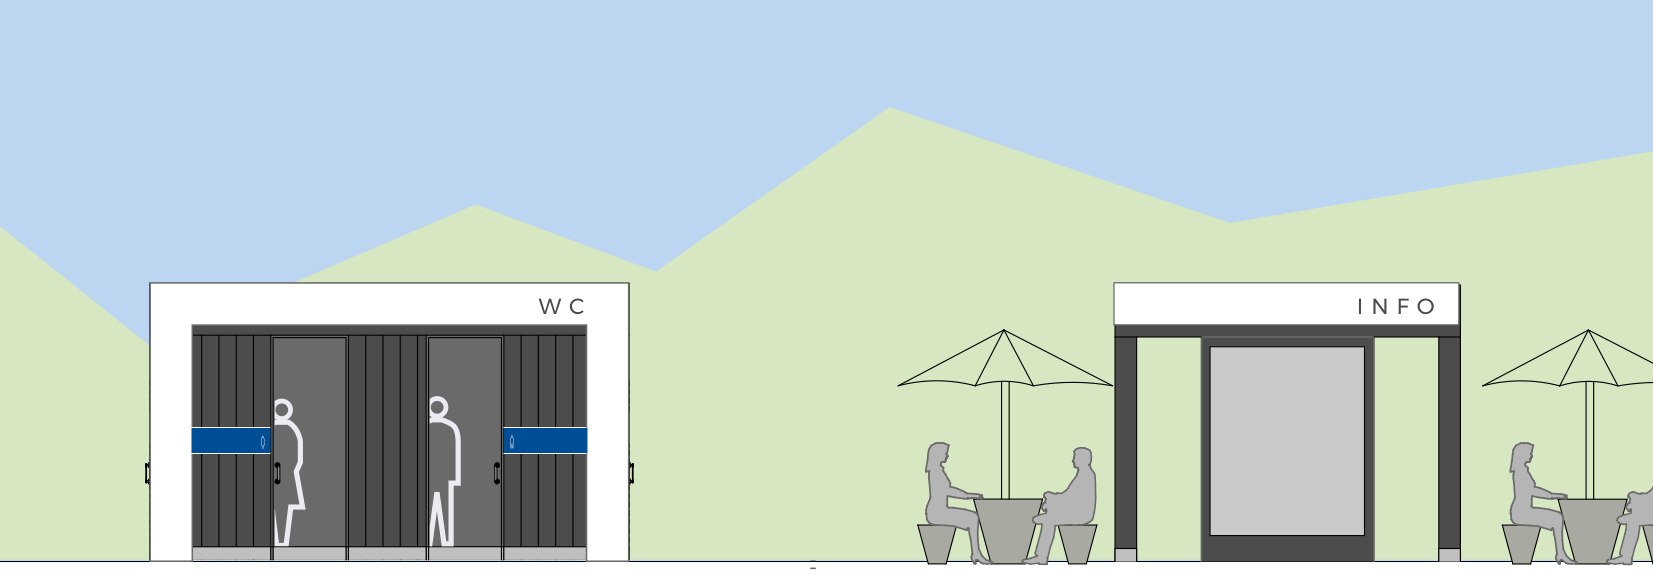 Grafični prikaz elementov prenovljenega malega počivališča